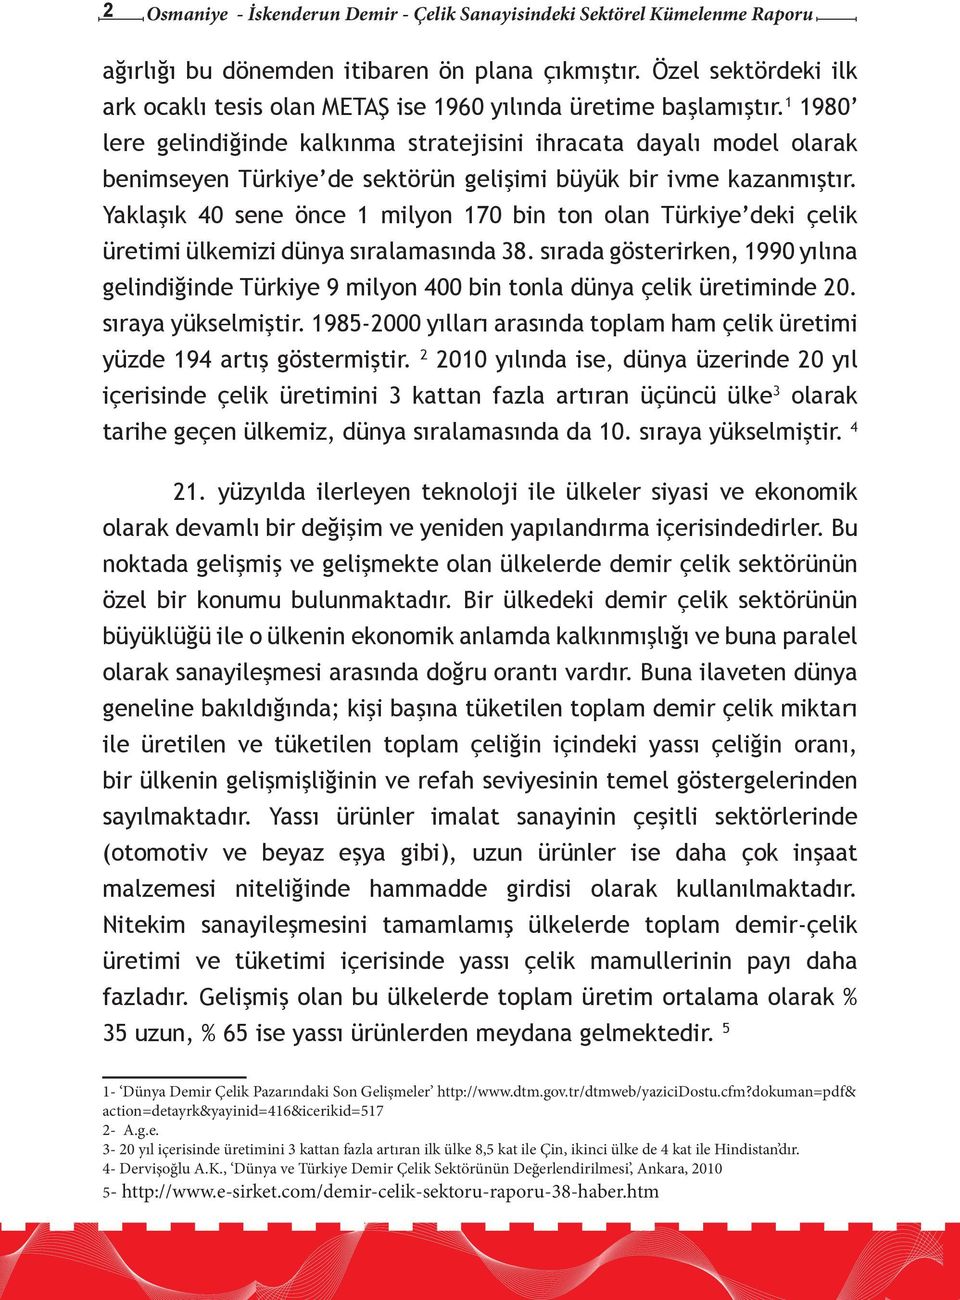 1 1980 lere gelindiğinde kalkınma stratejisini ihracata dayalı model olarak benimseyen Türkiye de sektörün gelişimi büyük bir ivme kazanmıştır.